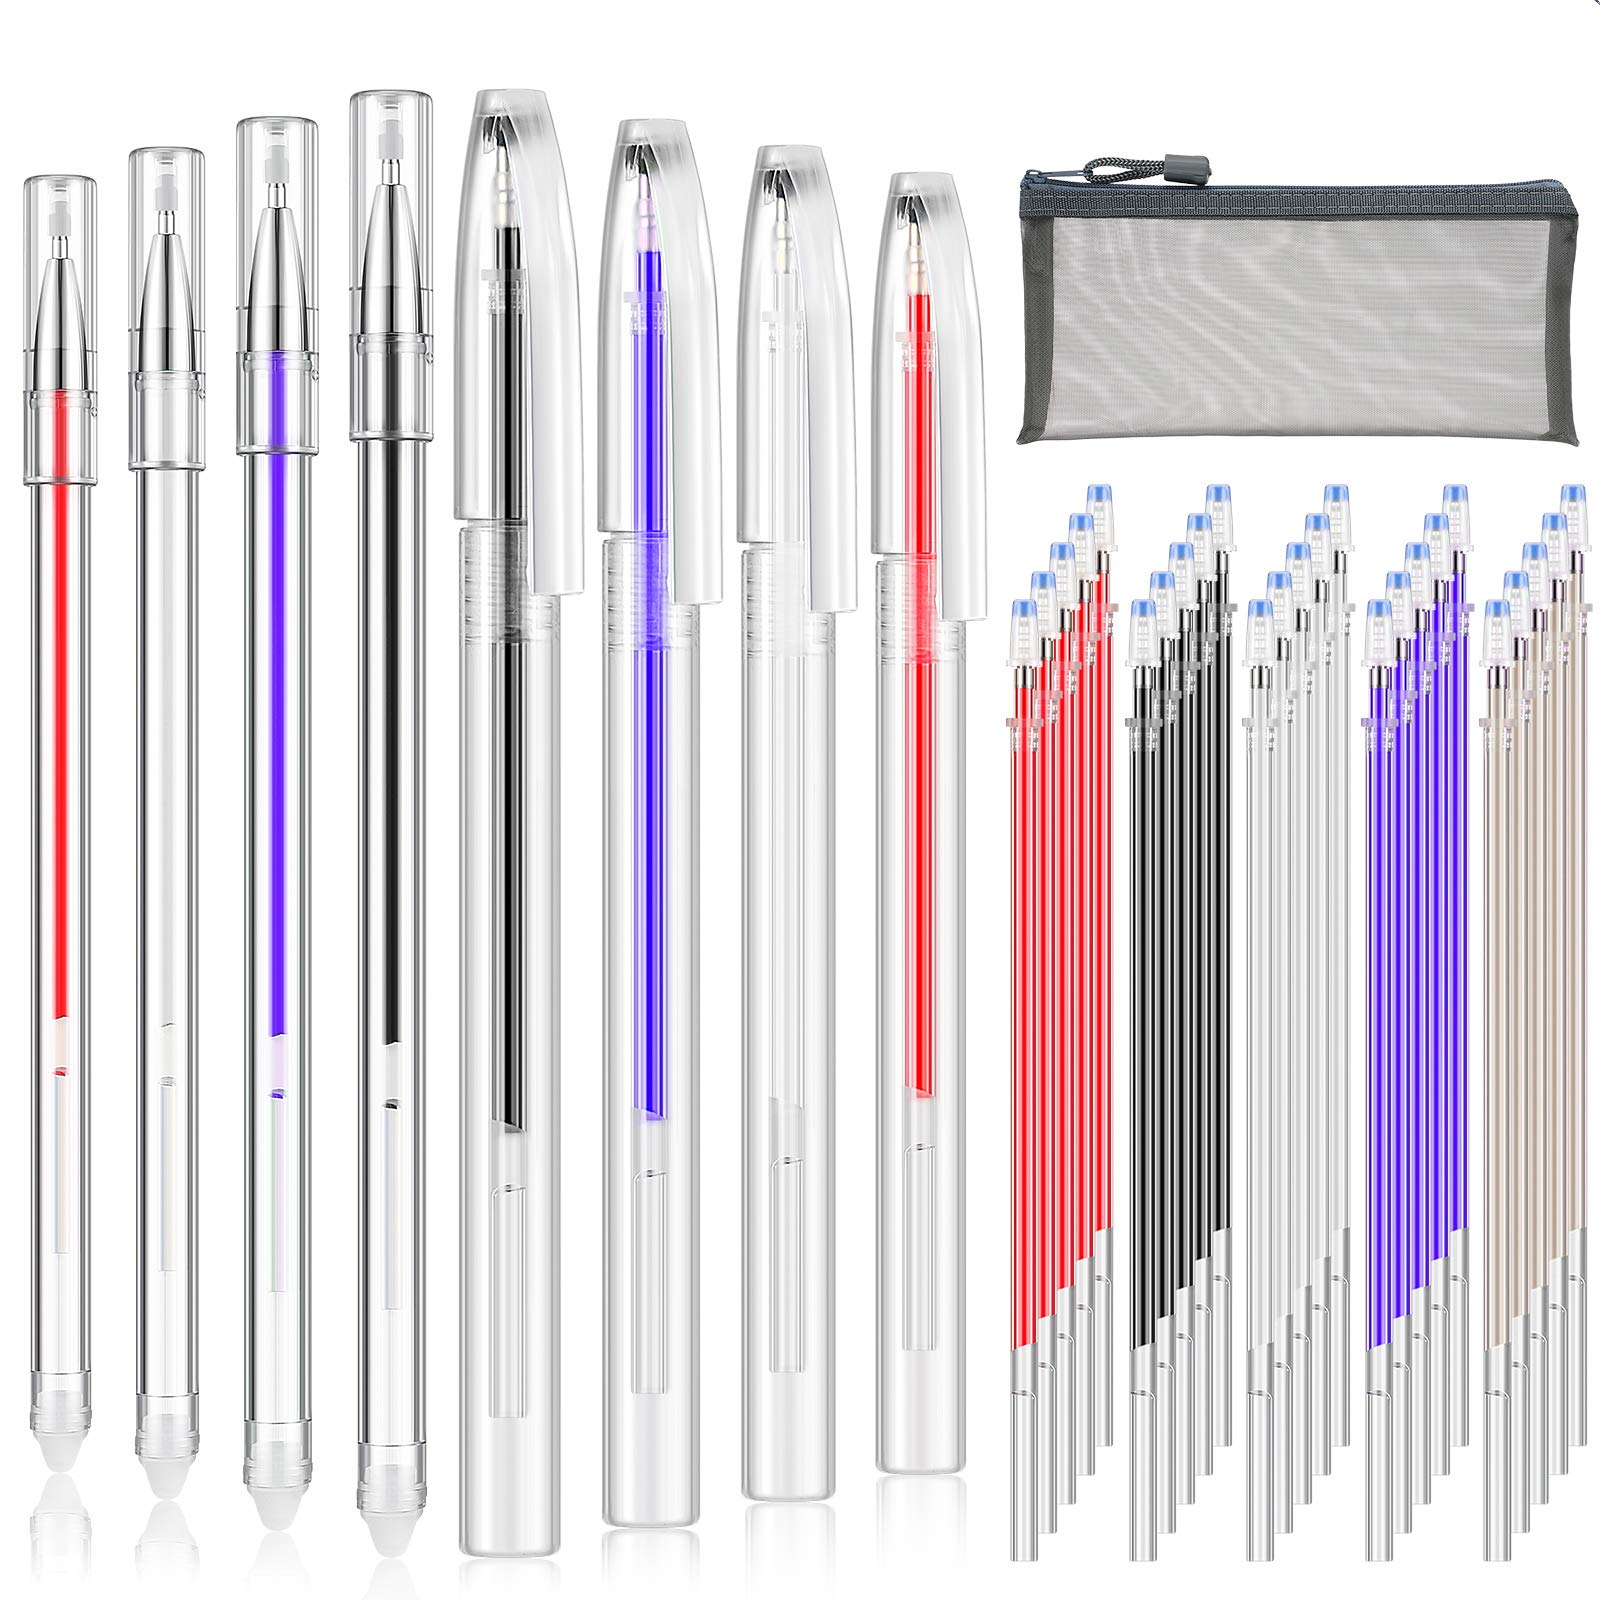 Outus 36 Pieces Heat Erasable Pens Set Includes 10 Pieces Heat